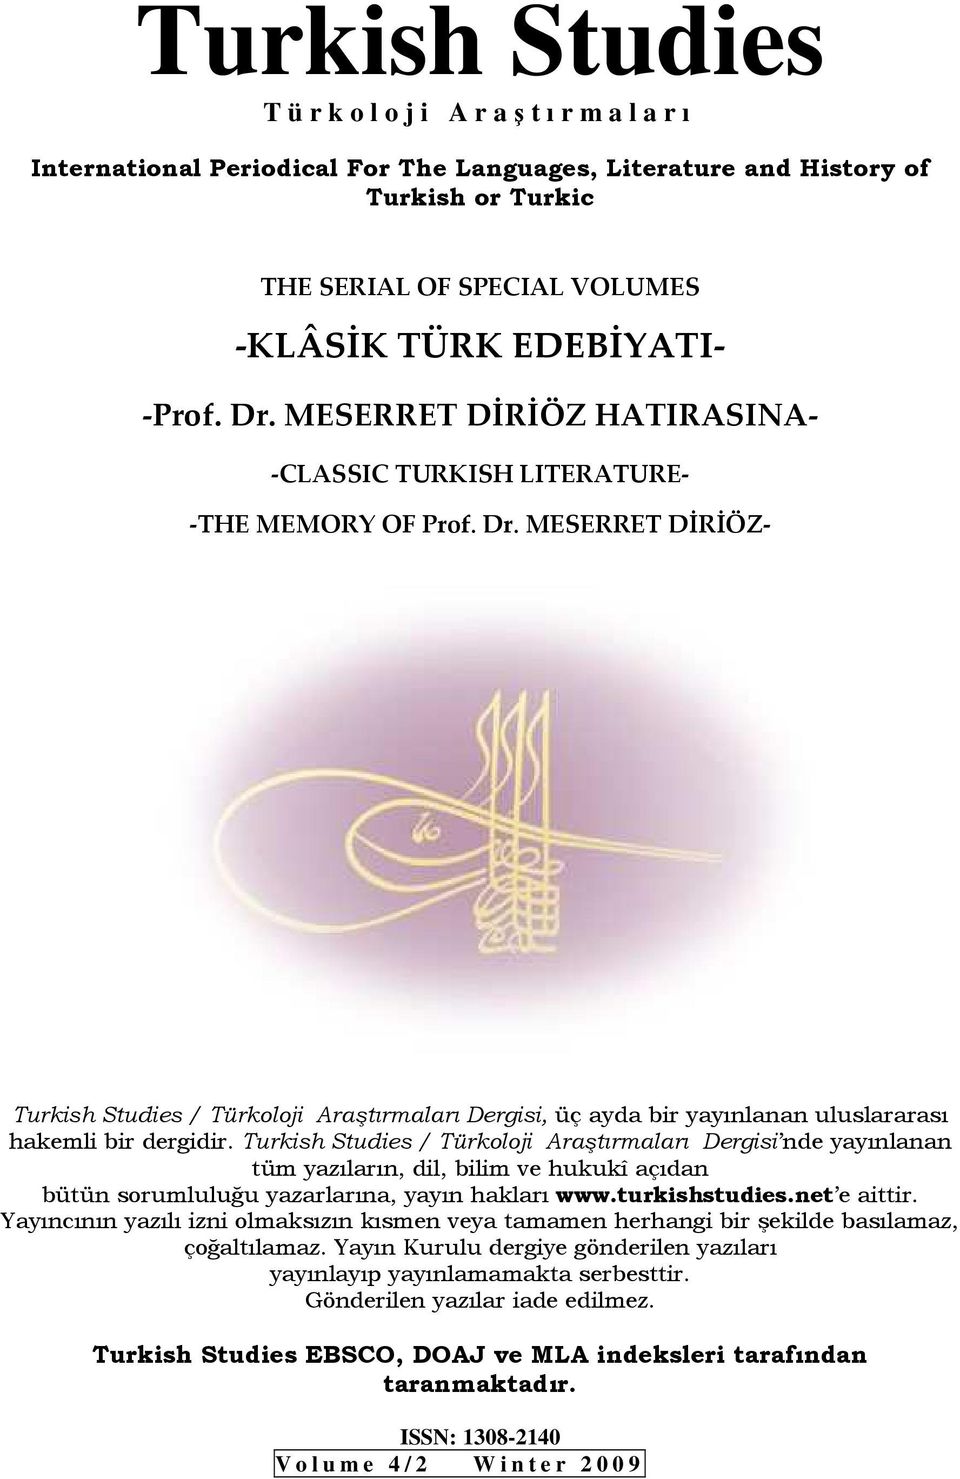 / Türkoloji Araştırmaları Dergisi nde yayınlanan tüm yazıların, dil, bilim ve hukukî açıdan bütün sorumluluğu yazarlarına, yayın hakları www.turkishstudies.net e aittir.